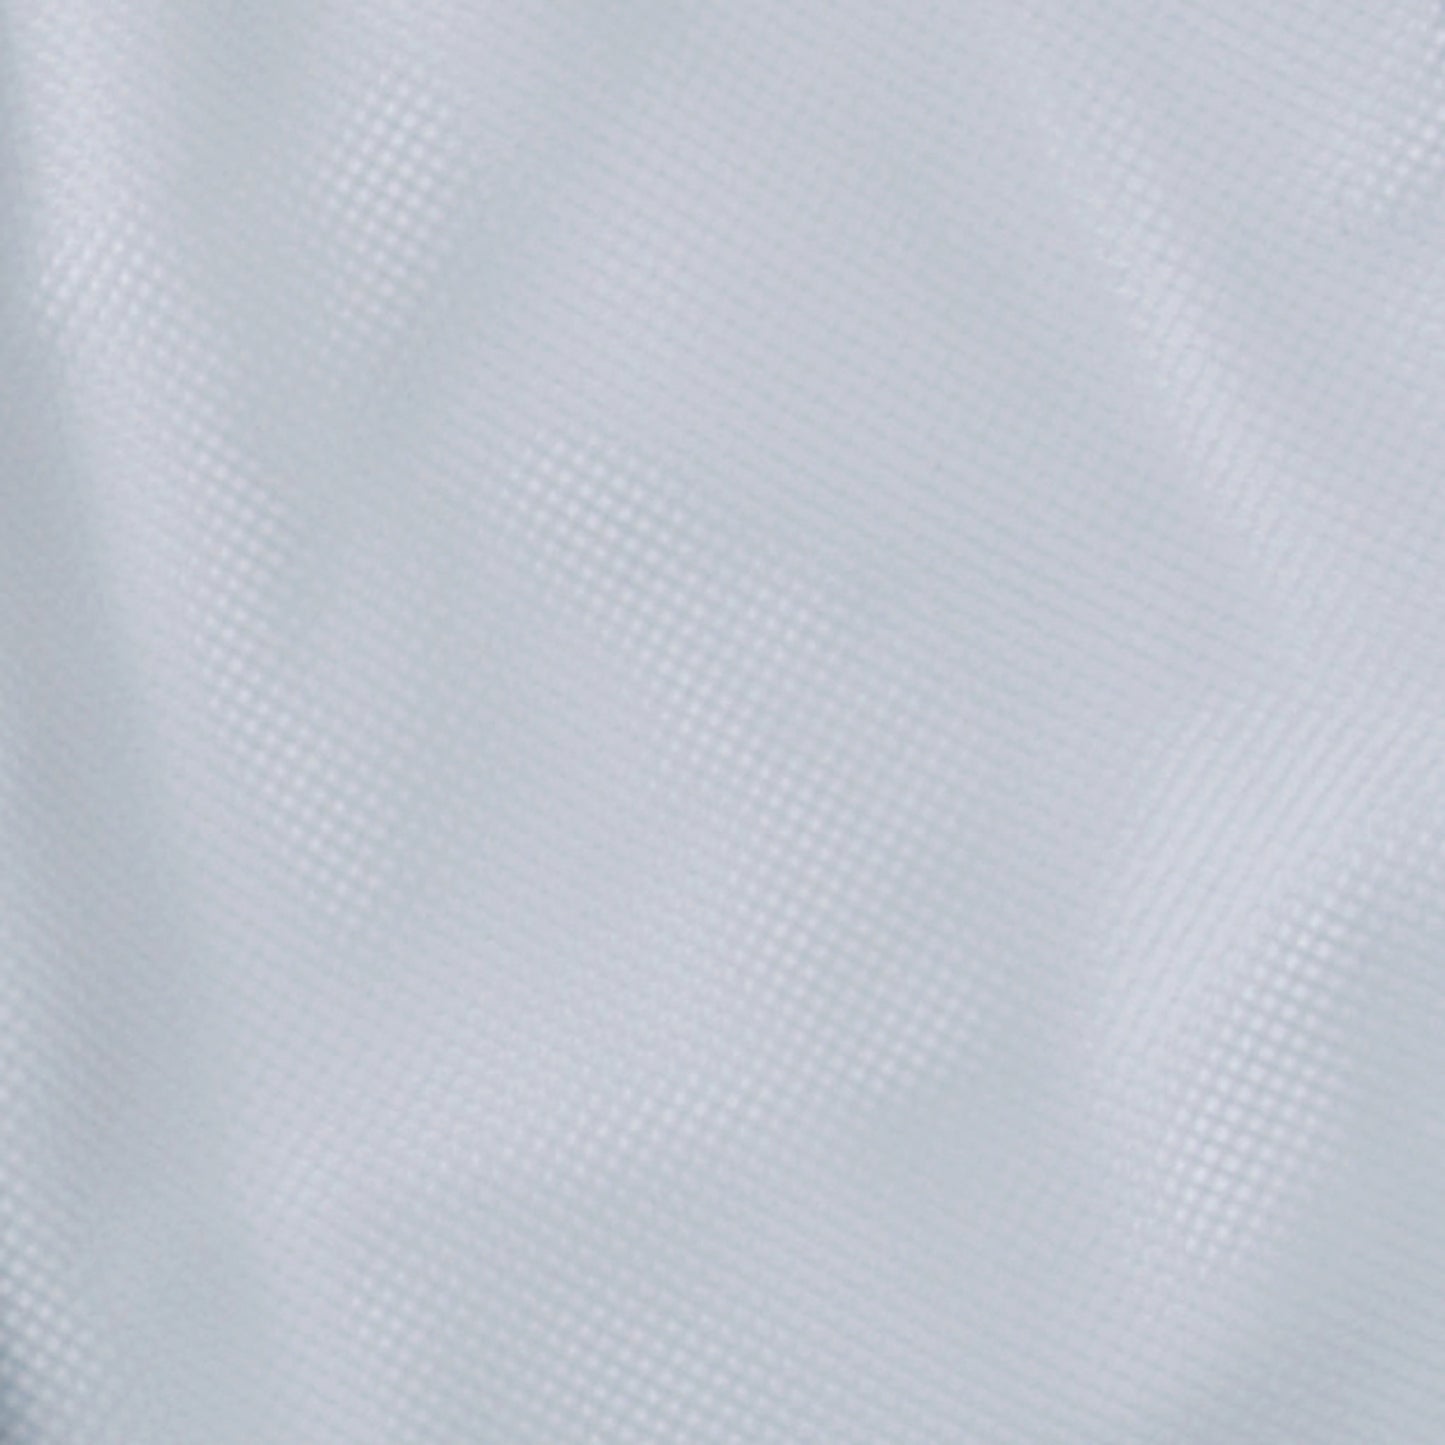 サンエス 食品工場用白衣 フードマイスター ウエストサイドがゴム仕様 女性用白衣 【女性用 横ゴム・裾口ストレートパンツ】 FX70978